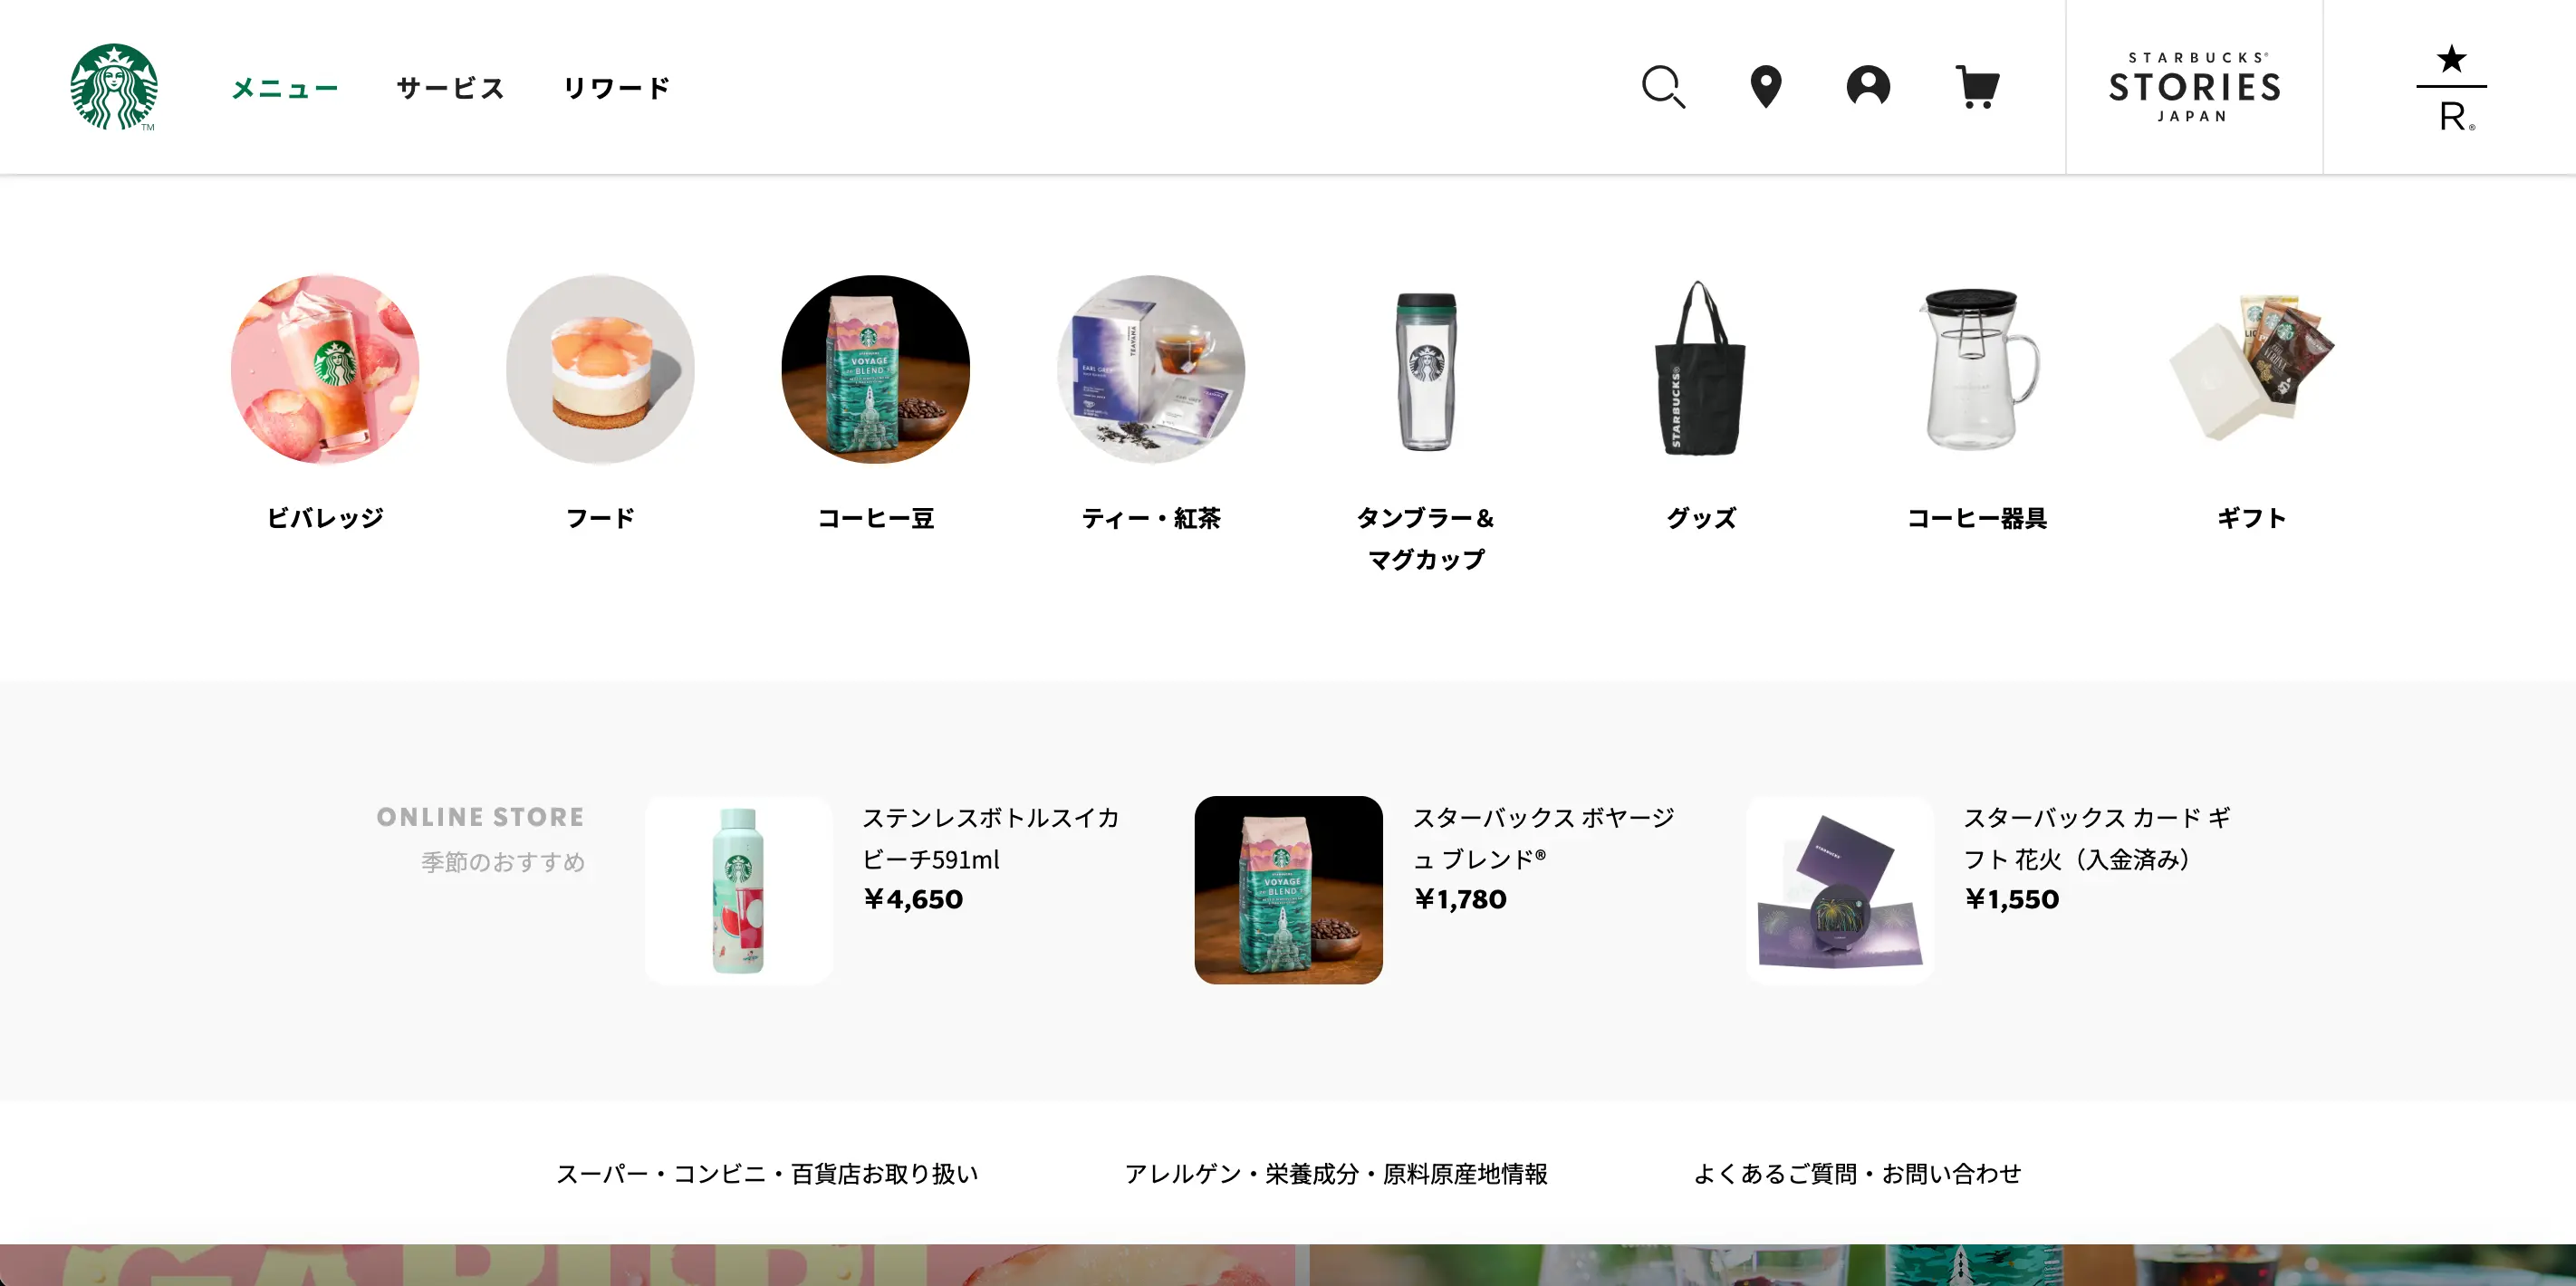 スターバックス 日本版サイト メニューページ